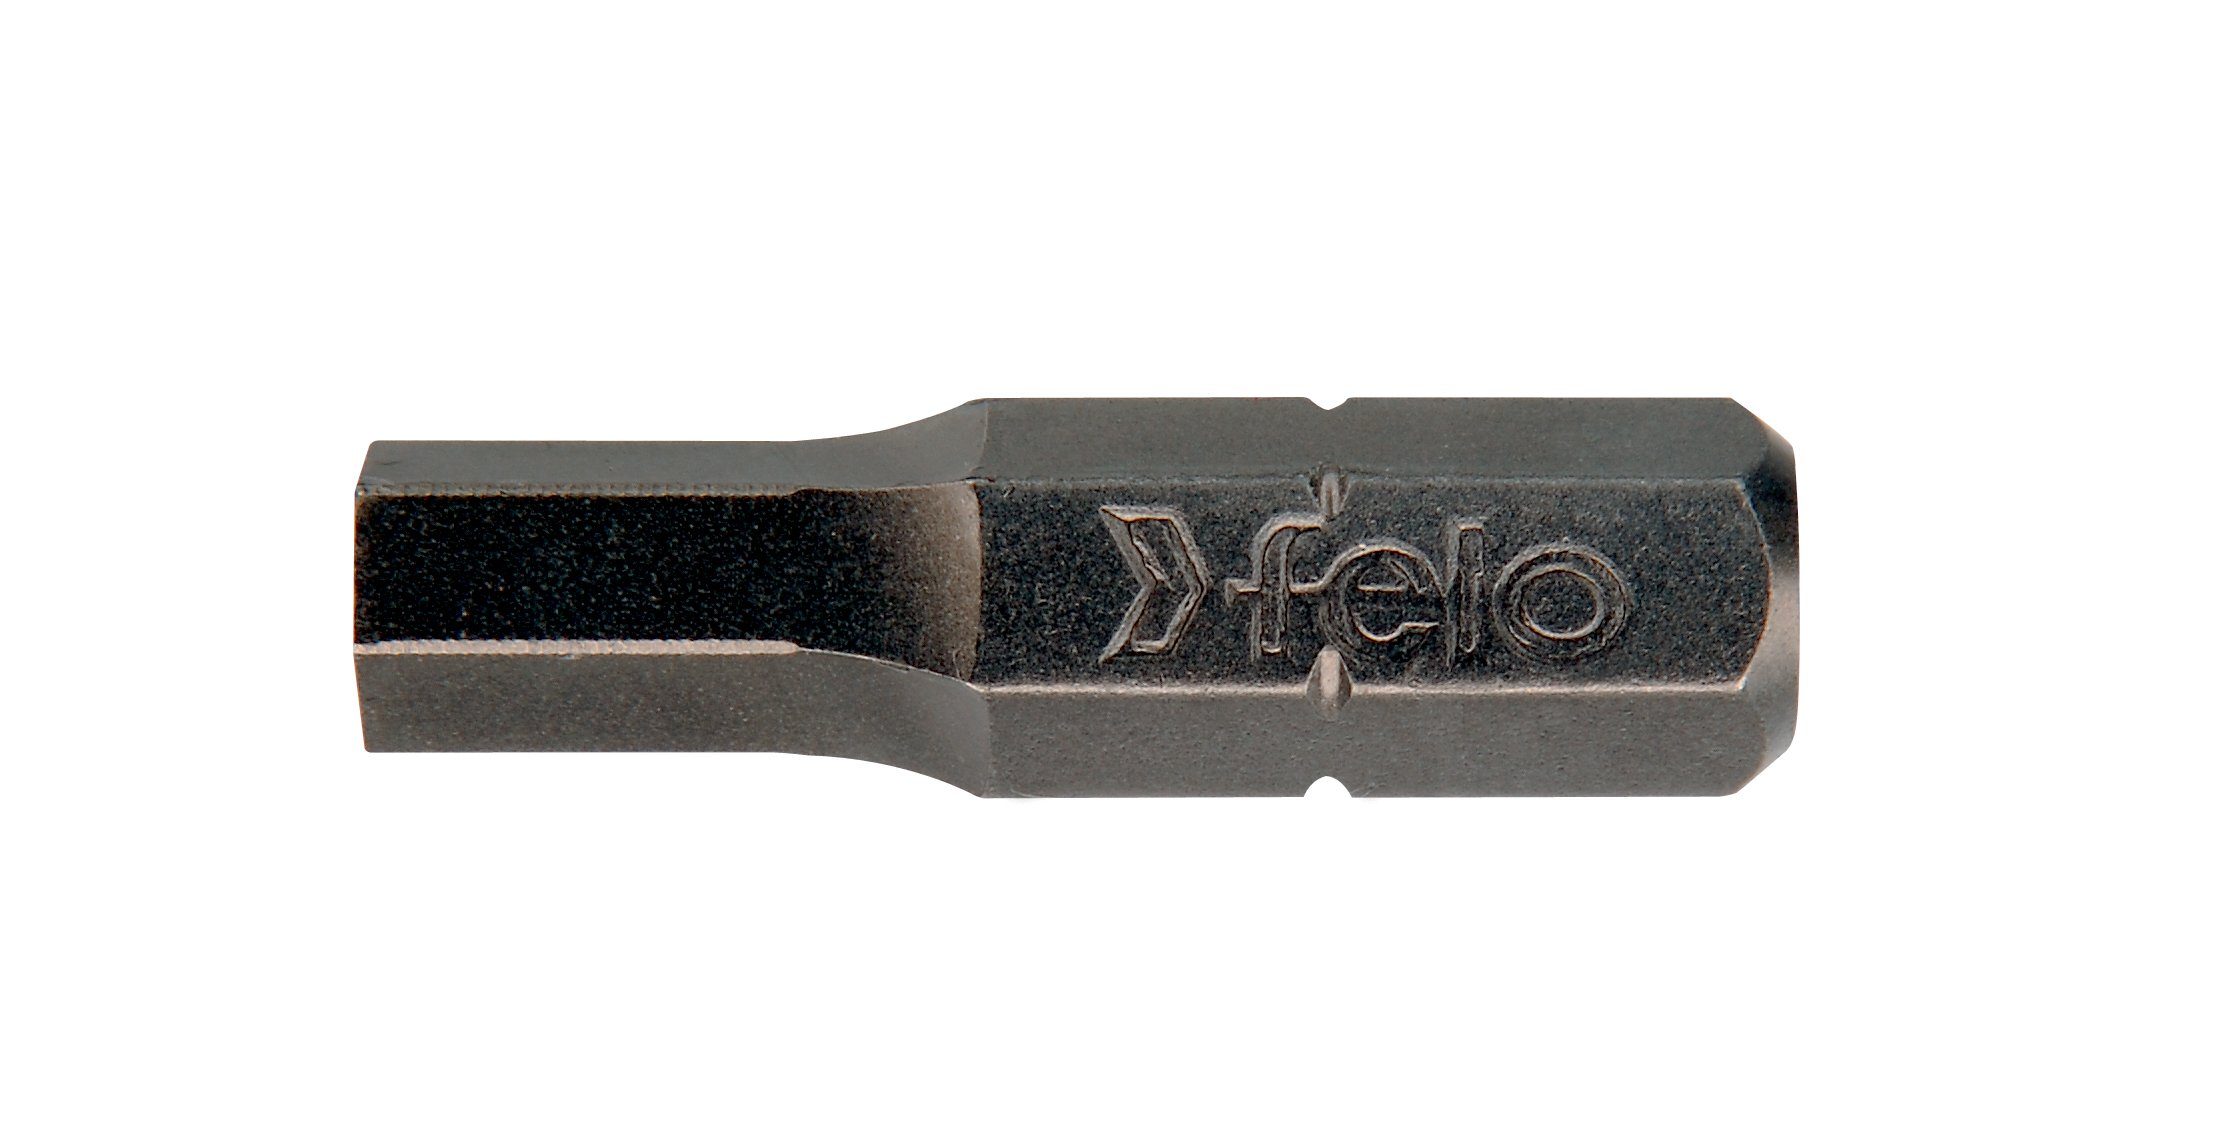 6,3 4,0mm x C Industrie Stück) Felo Felo (10 25mm Bit, Sechskant-Bit